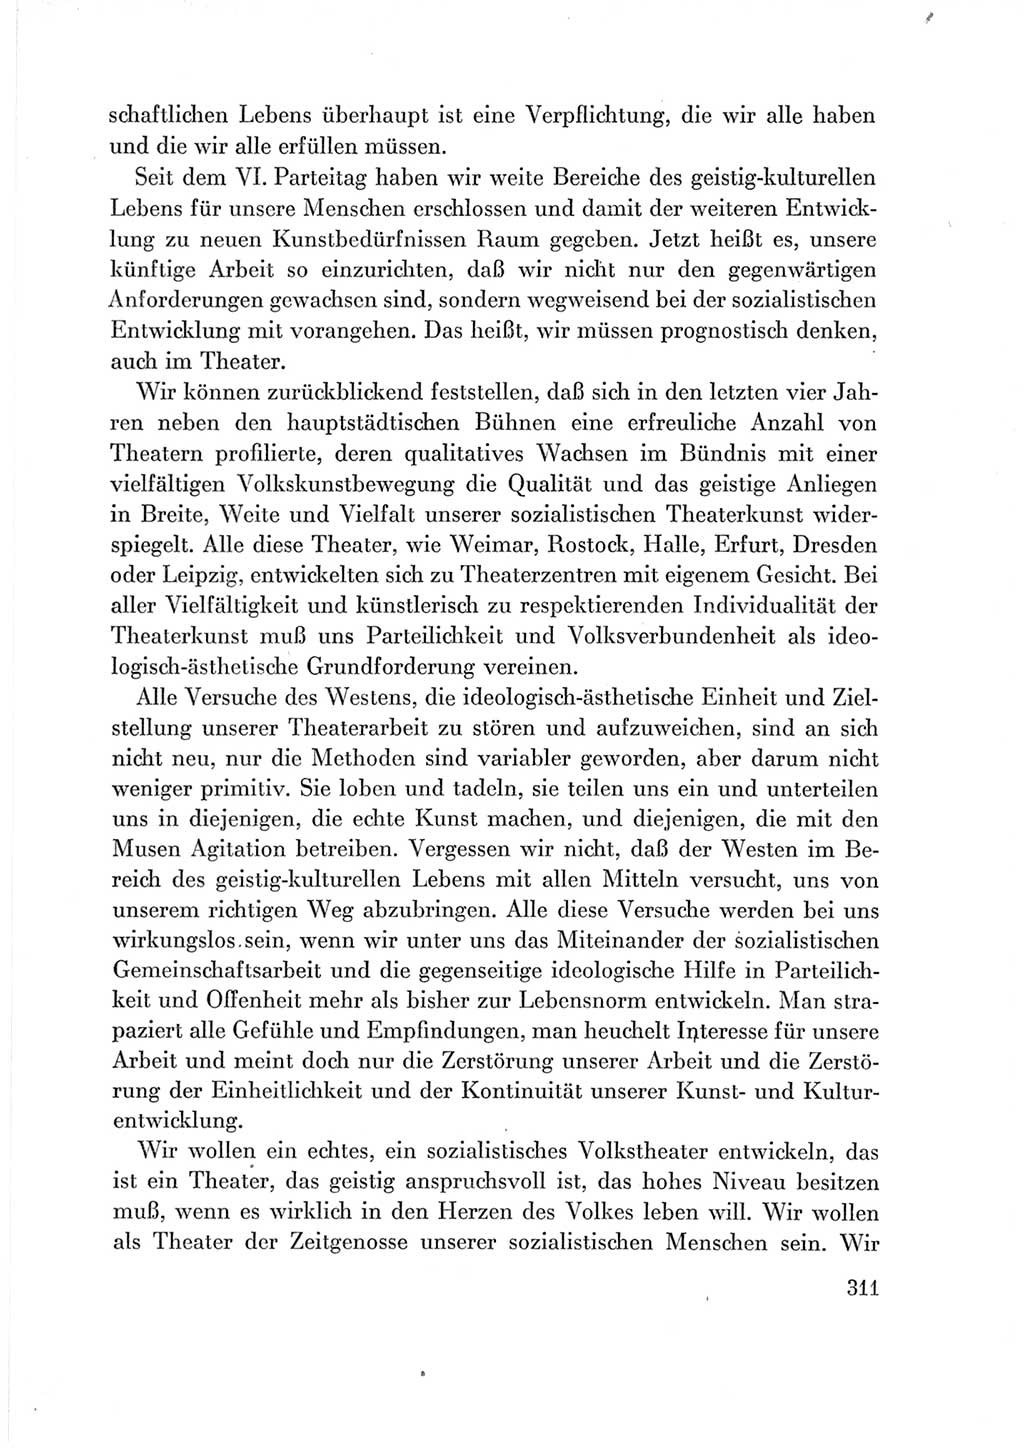 Protokoll der Verhandlungen des Ⅶ. Parteitages der Sozialistischen Einheitspartei Deutschlands (SED) [Deutsche Demokratische Republik (DDR)] 1967, Band Ⅲ, Seite 311 (Prot. Verh. Ⅶ. PT SED DDR 1967, Bd. Ⅲ, S. 311)